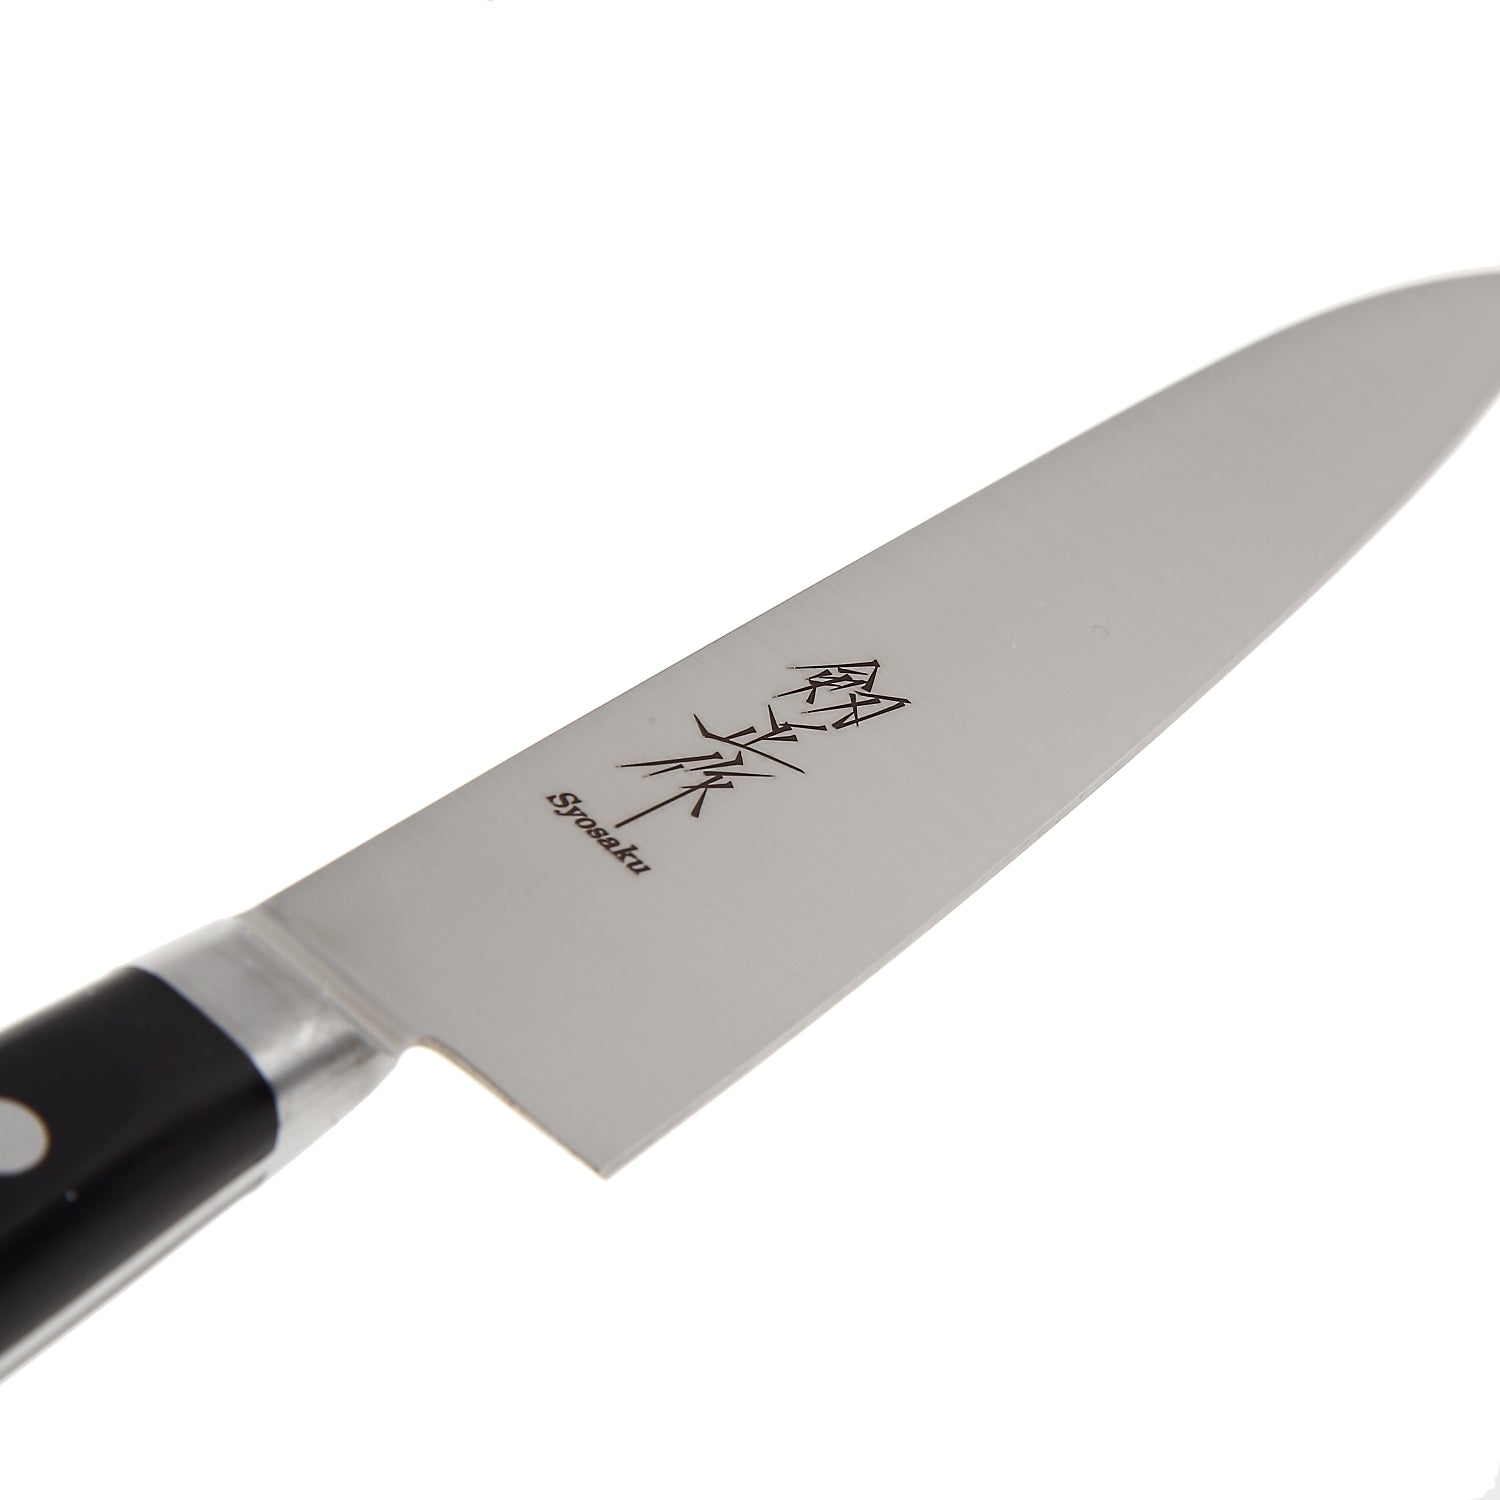 Syosaku Japanese Petty Knife INOX AUS-8A Stainless Steel Black Pakkawood Handle, 6-inch (150mm)